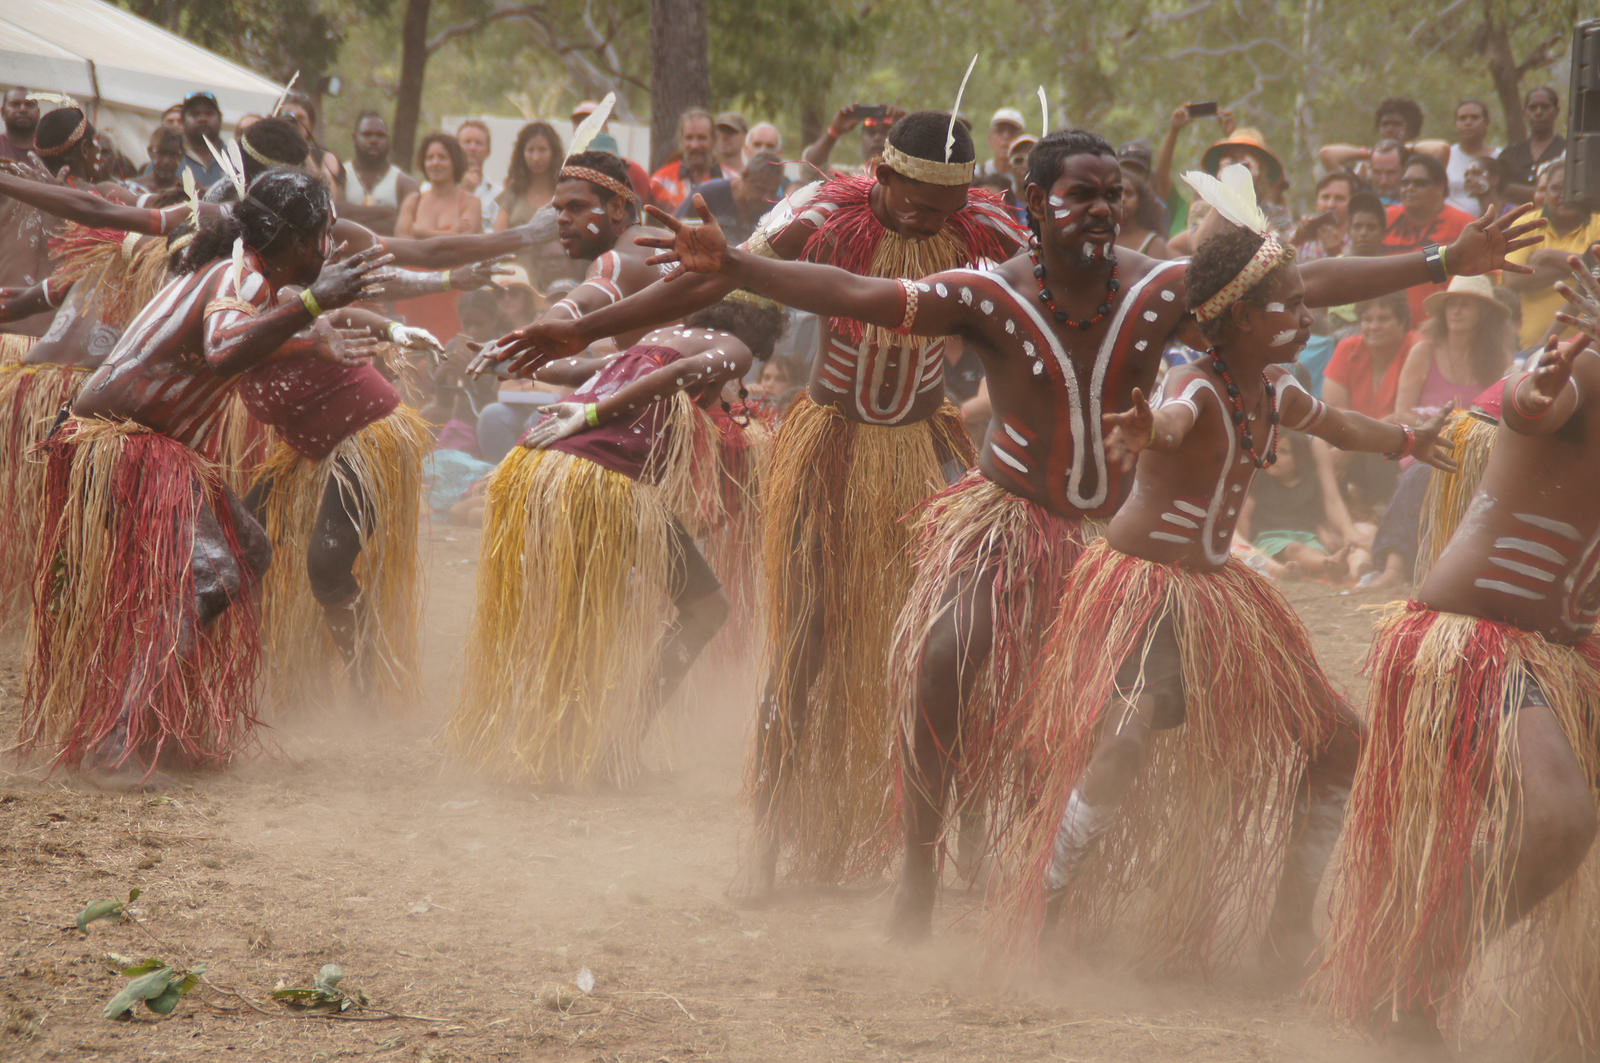 højen Konfrontere Ombord 11 Facts About Aboriginal Australian Ceremonies